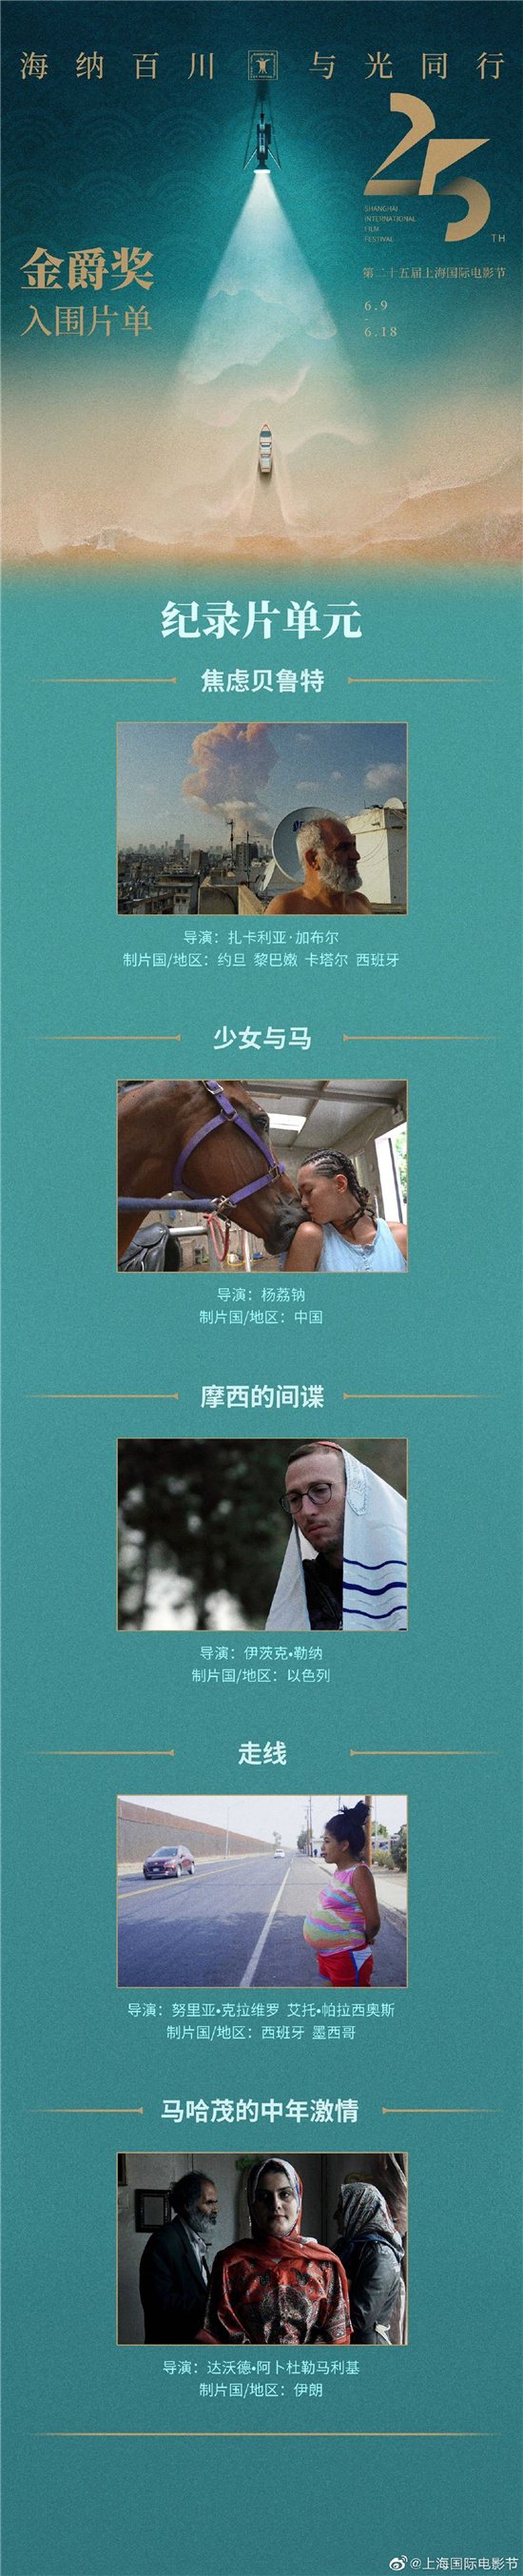 第二十五届上海国际电影节金爵奖入围名单揭晓